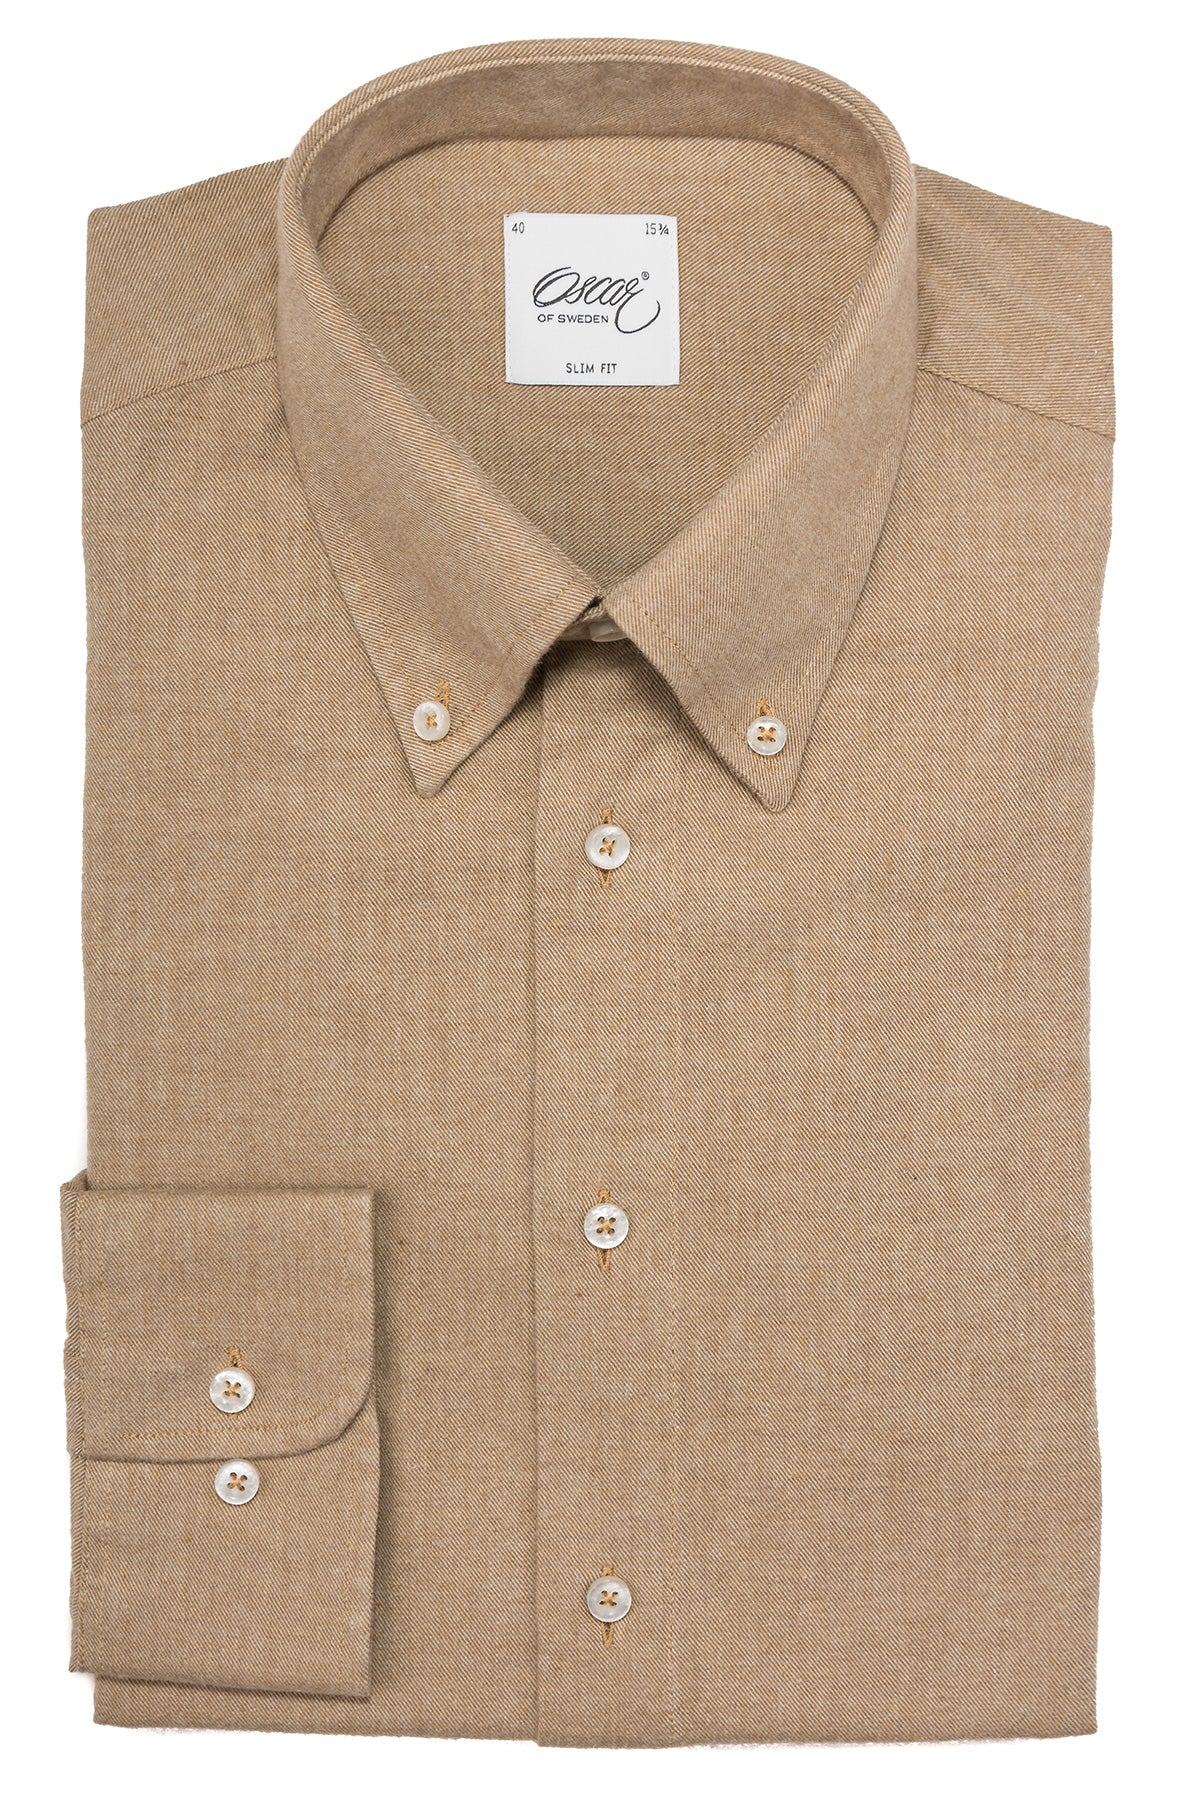 Beige flannel button down slim fit shirt